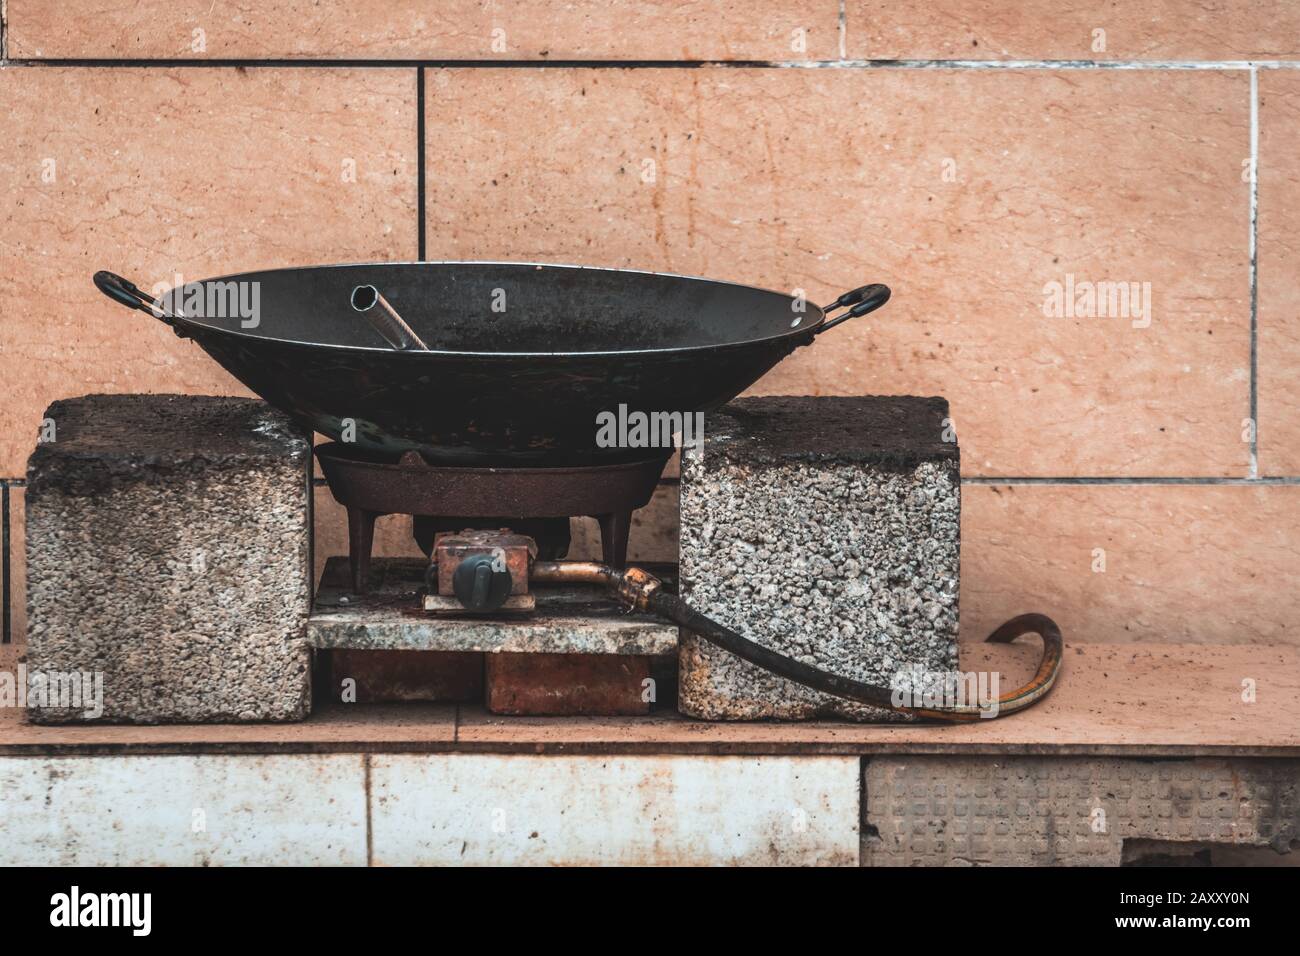 Alte schwarze Metallpfanne wok auf einem Gaskocher auf einem  Straßenlebensmittelstand in China Stockfotografie - Alamy